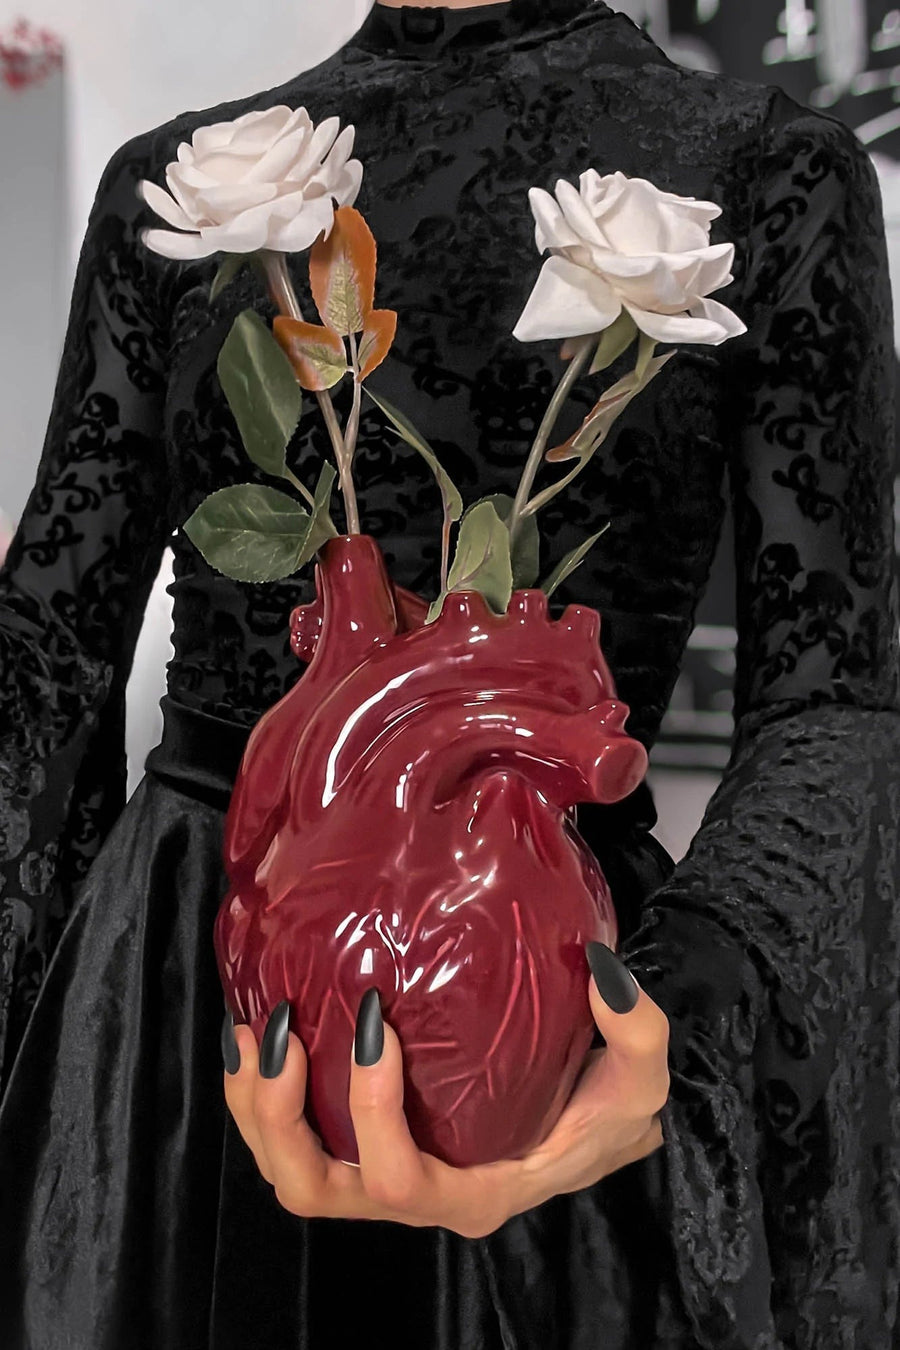 heart-shaped flower vase